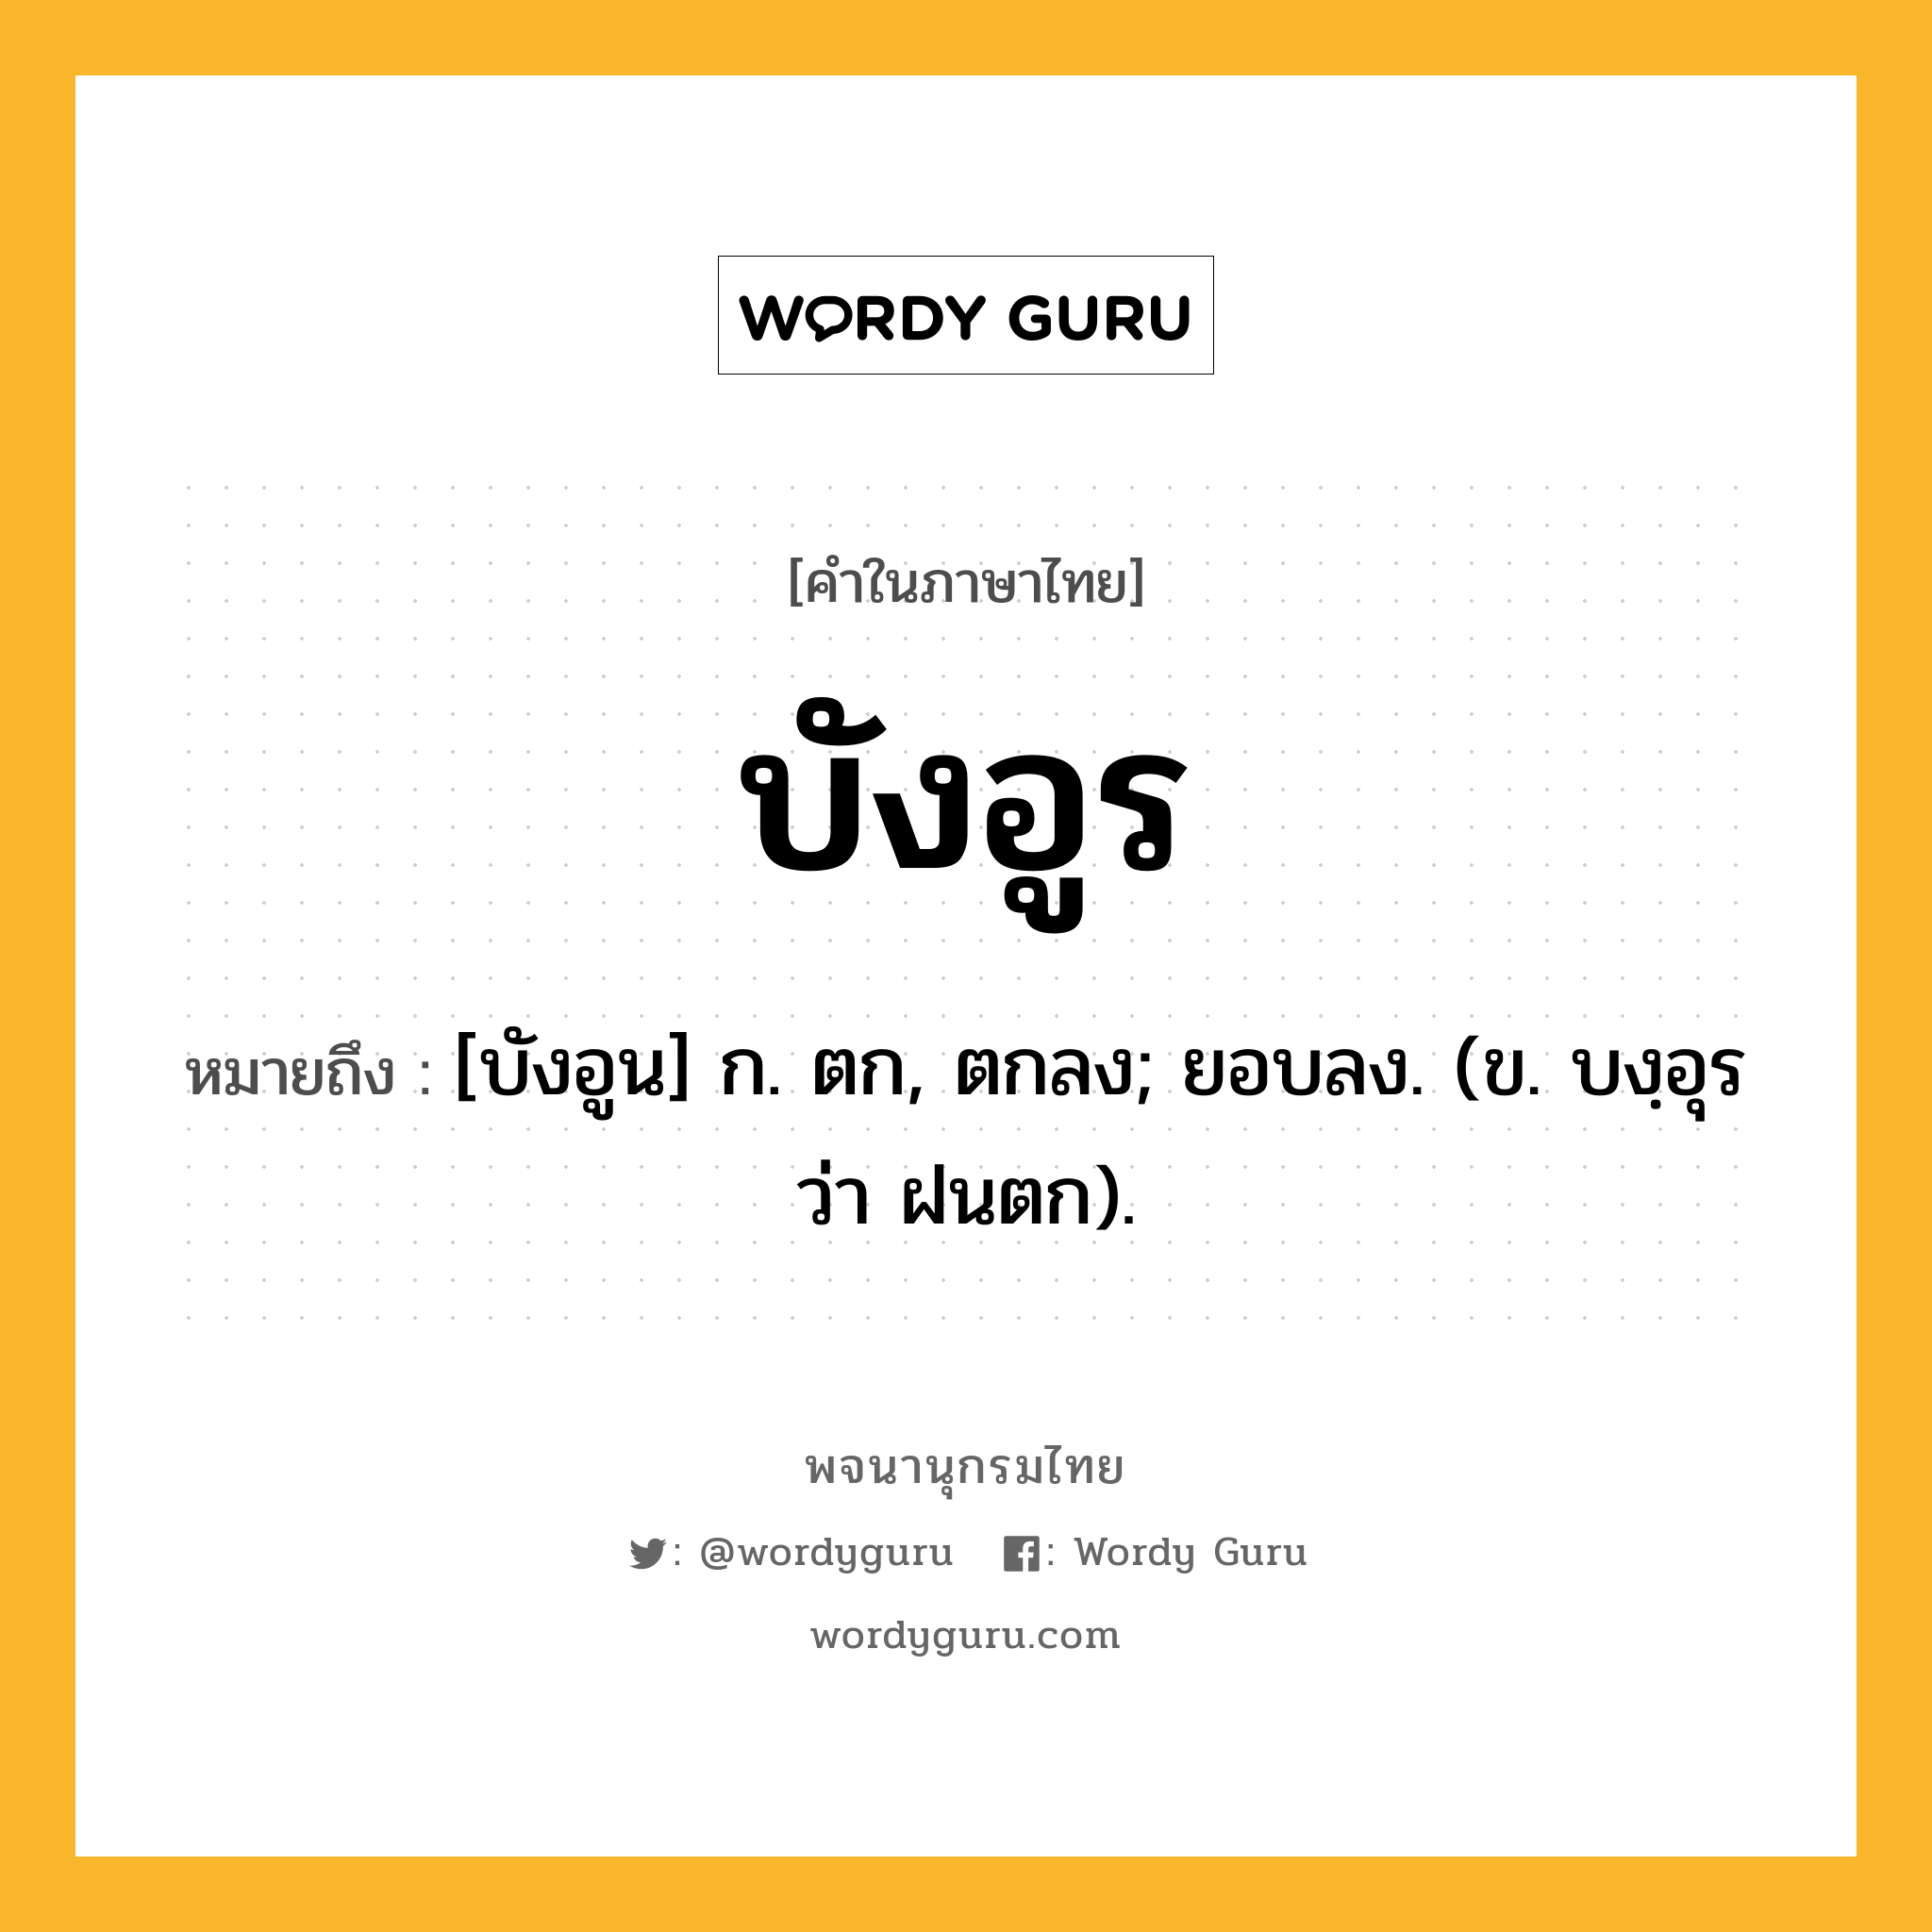 บังอูร ความหมาย หมายถึงอะไร?, คำในภาษาไทย บังอูร หมายถึง [บังอูน] ก. ตก, ตกลง; ยอบลง. (ข. บงฺอุร ว่า ฝนตก).